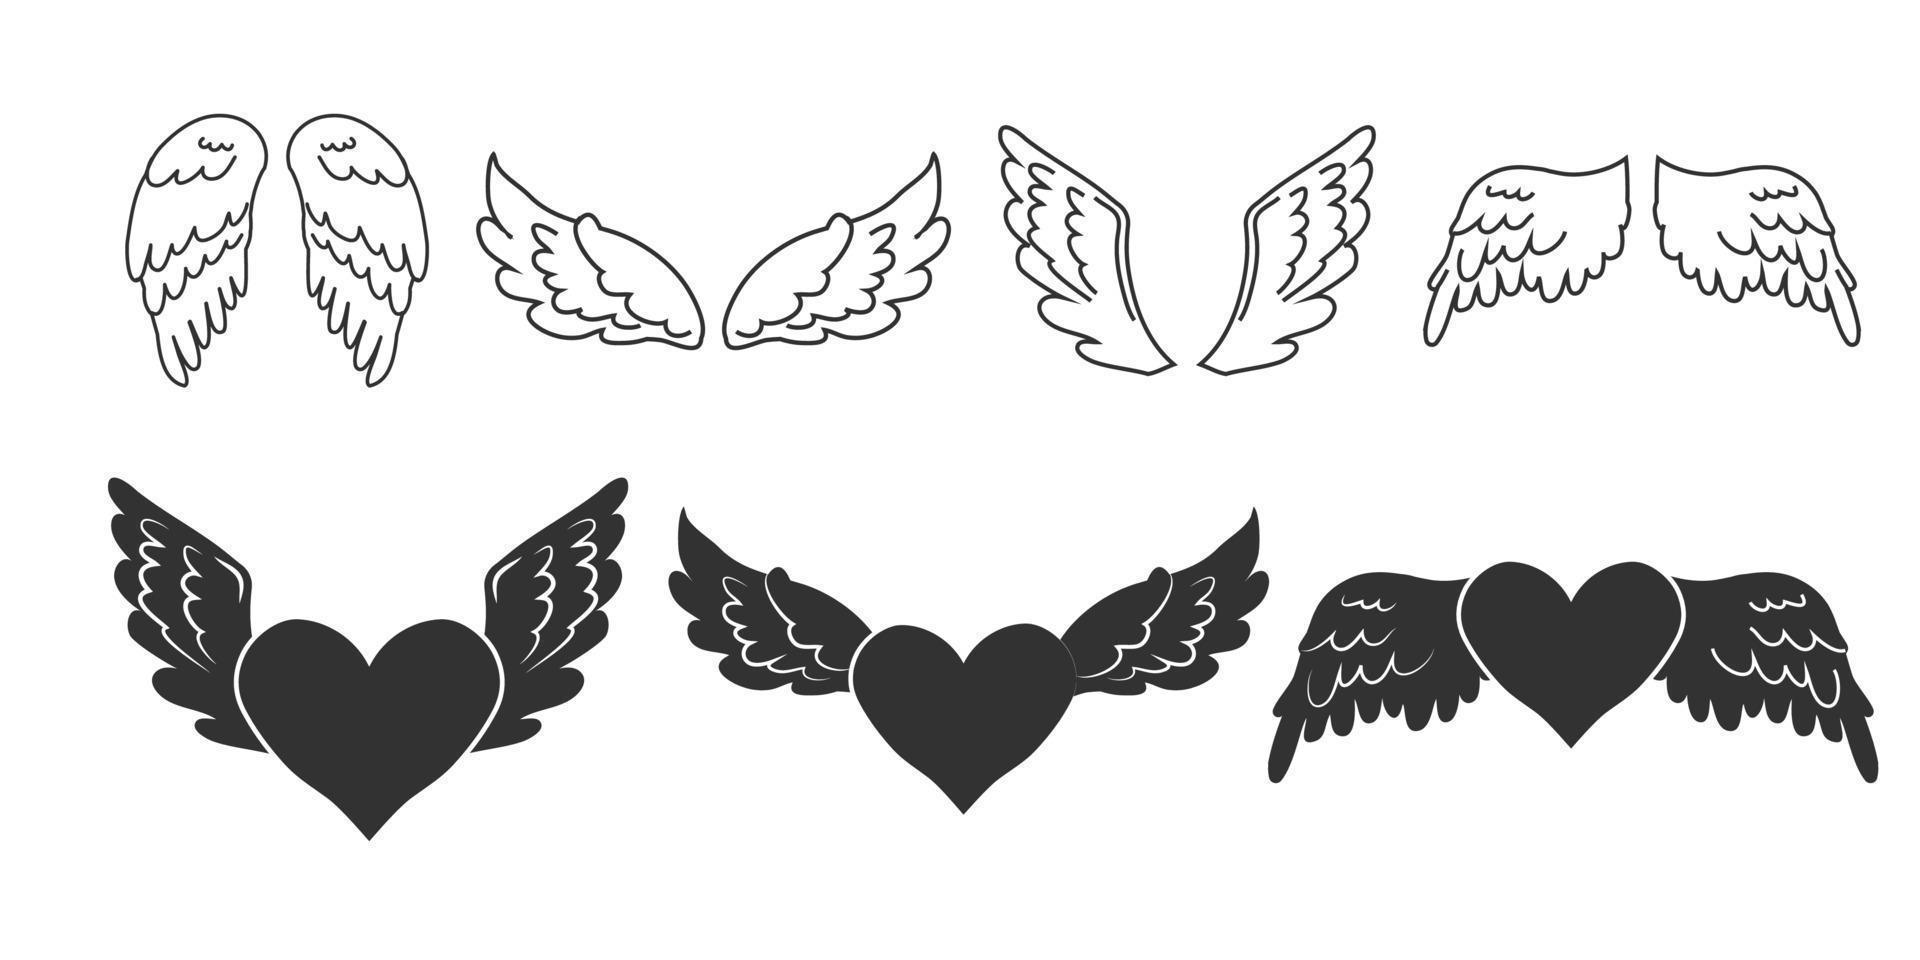 définir des ailes d'ange avec coeur, contour et silhouette en style cartoon isolé sur fond bleu, élément de conception pour la décoration. illustration vectorielle vecteur